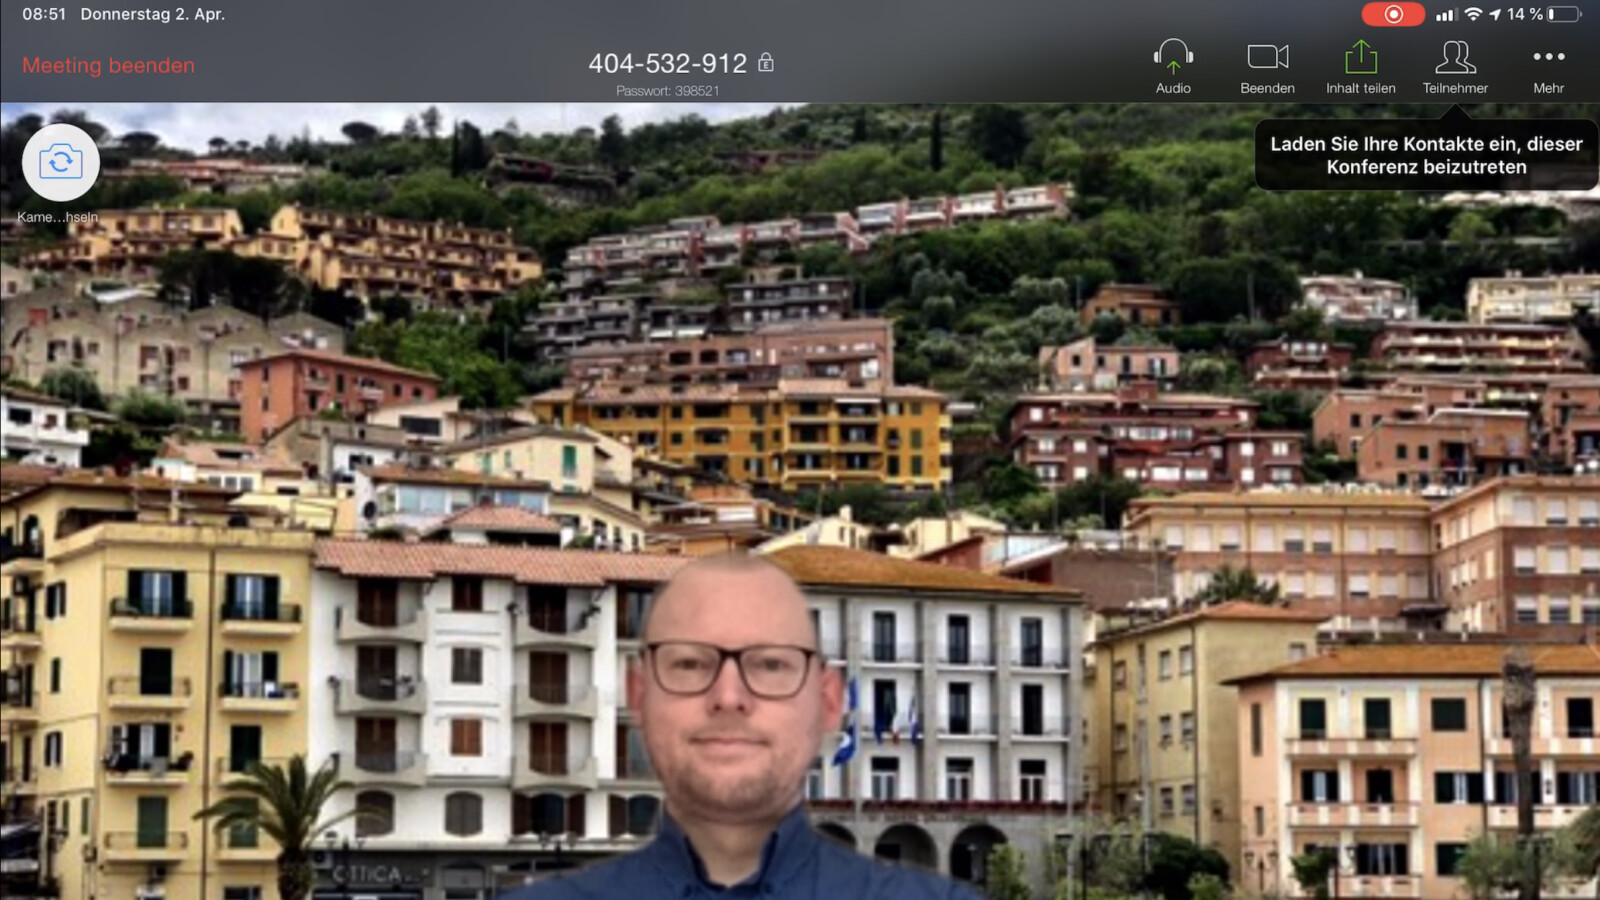 Zoom Virtuellen Hintergrund Einstellen So Geht S Netzwelt